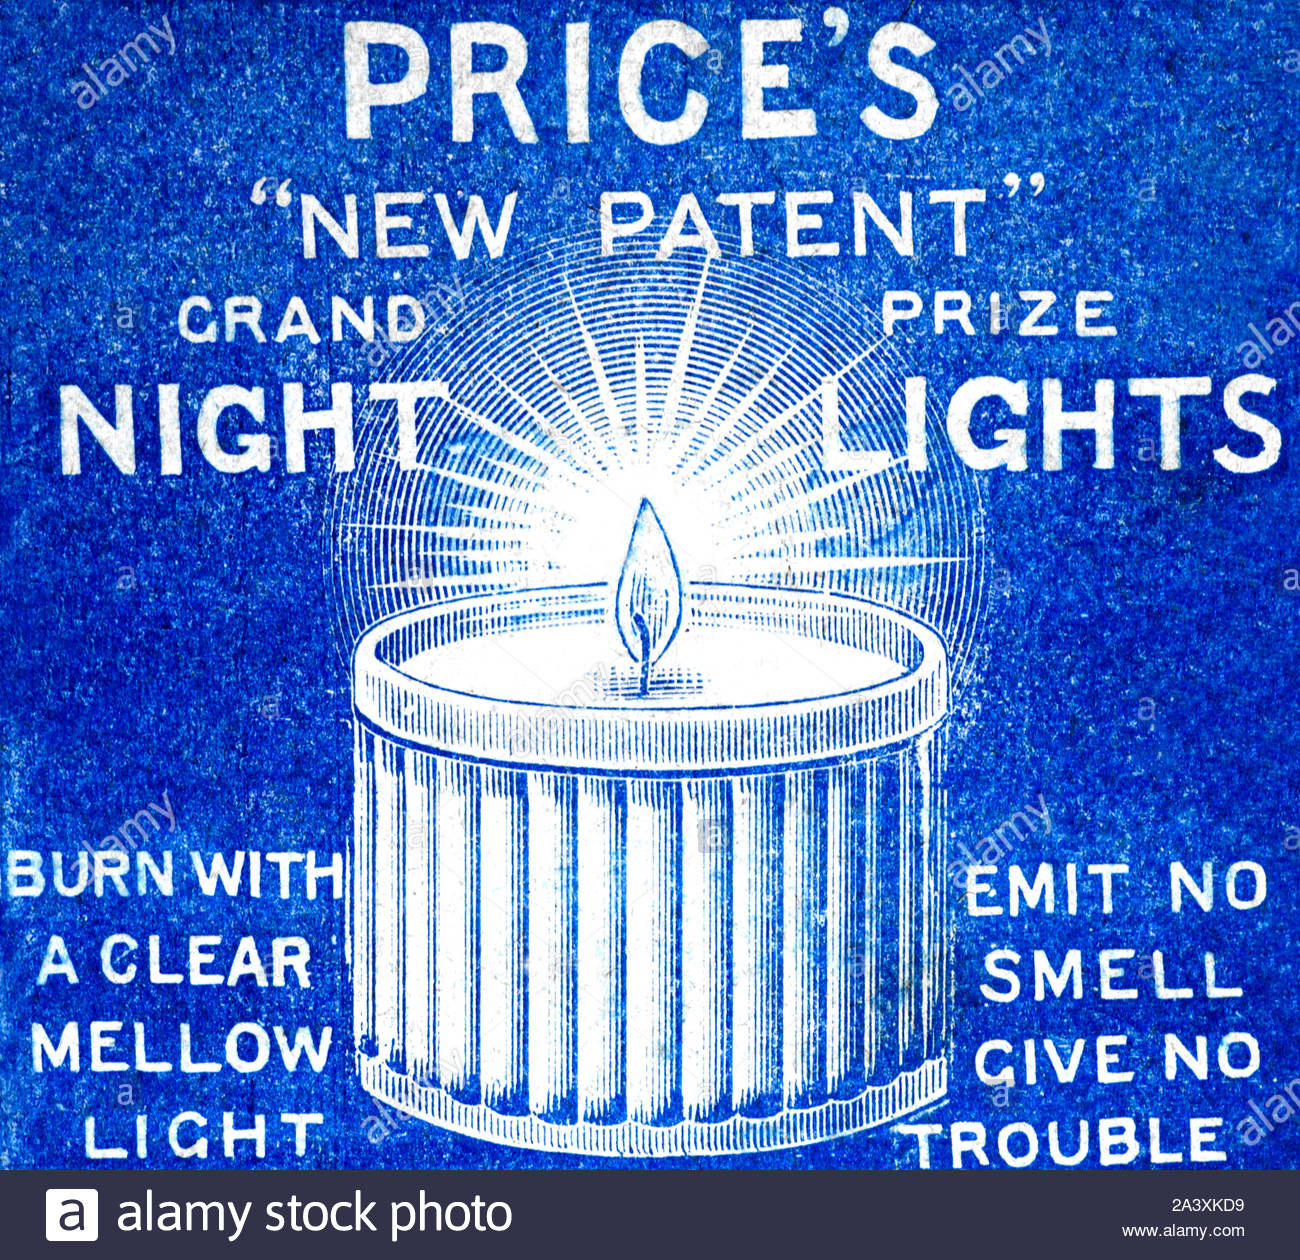 Der viktorianischen Ära, der Preis Nachtlichter, Vintage Werbung von 1897 Stockfoto